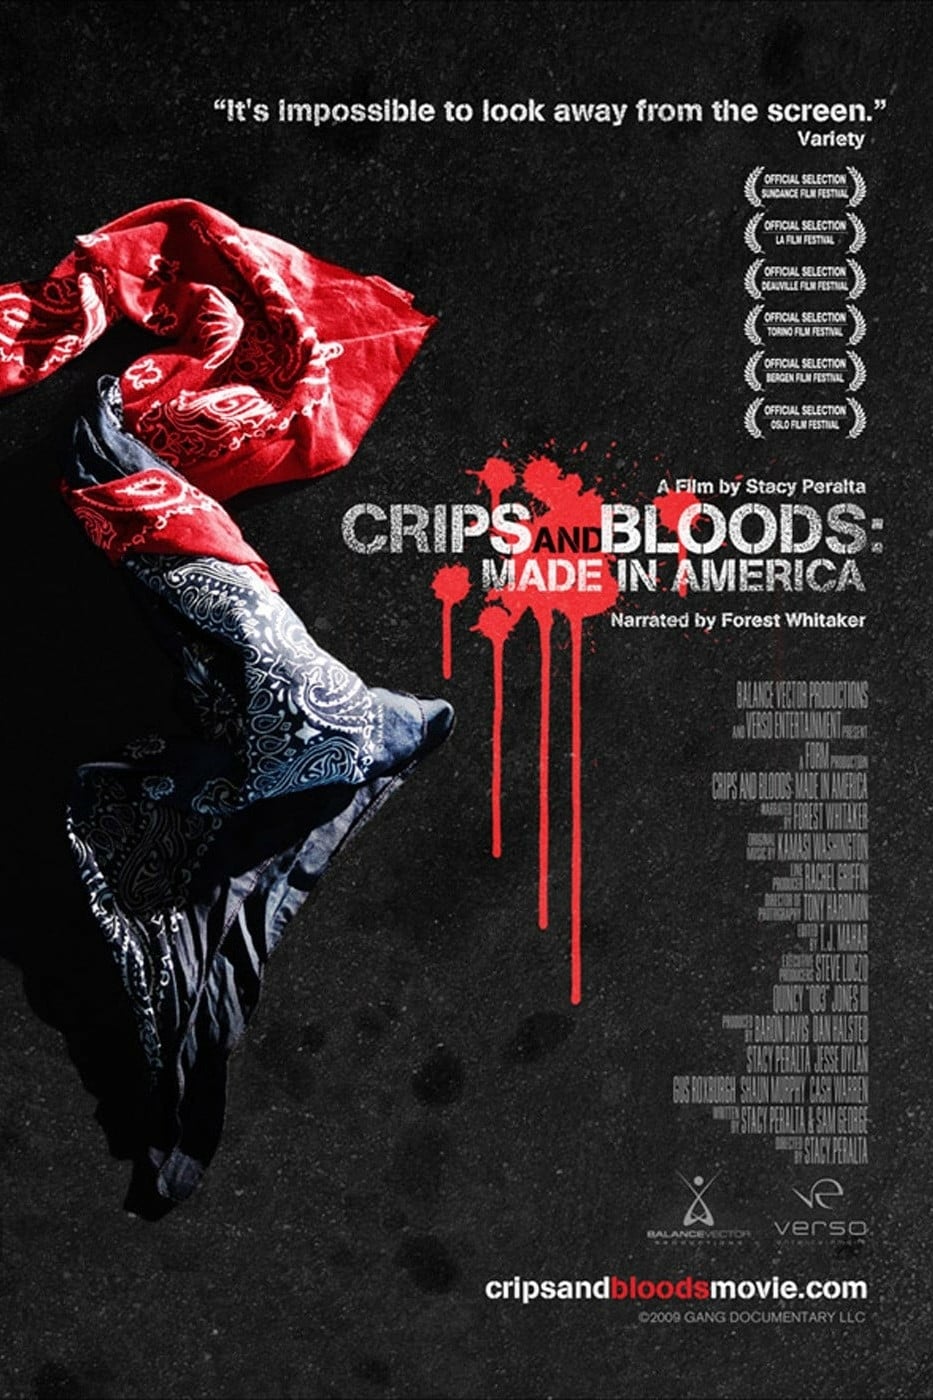 Plakat von "Crips and Bloods"